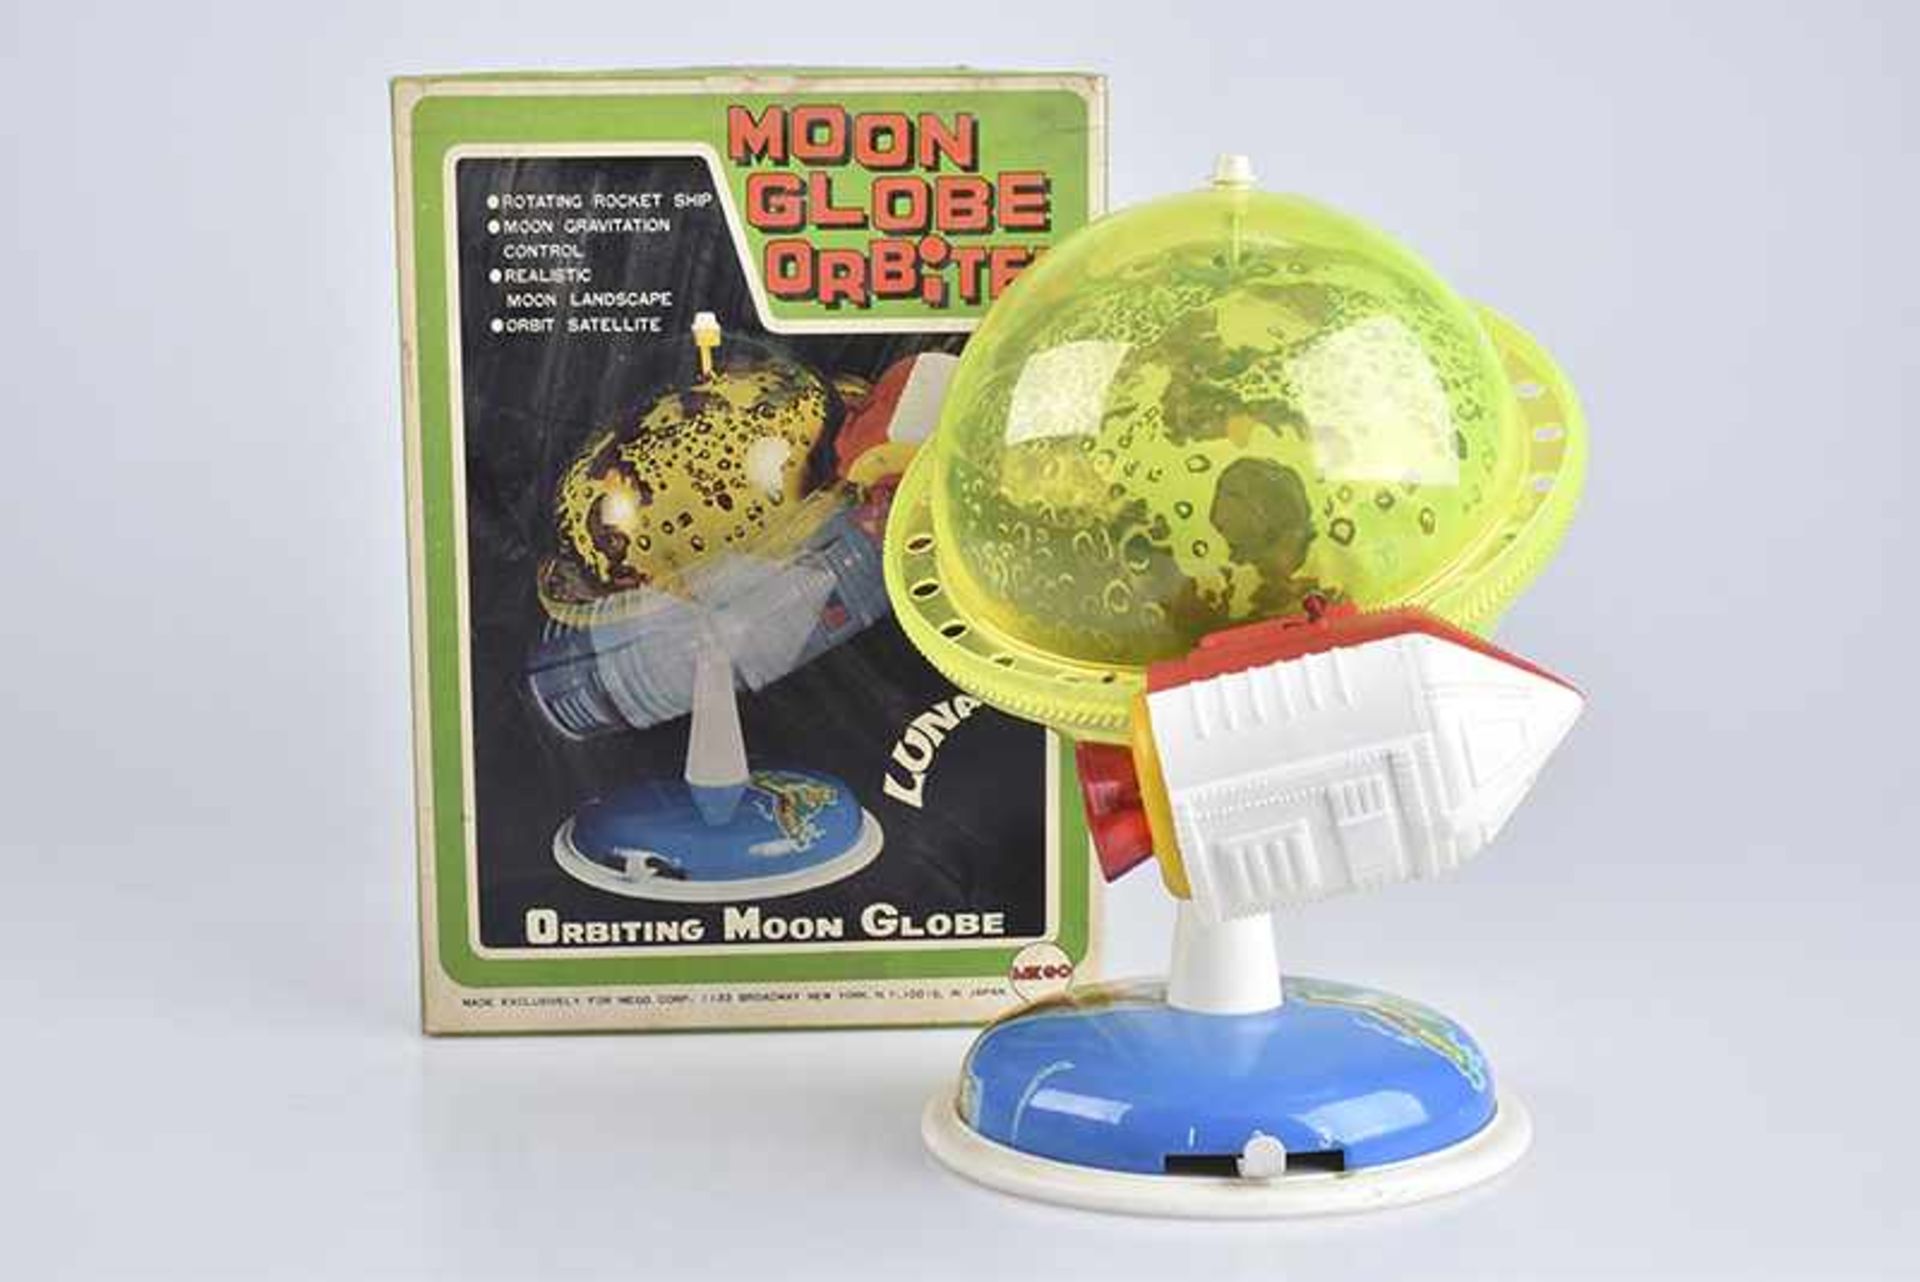 MEGO Moon Globe Orbiter, 60er Jahre, Made in Japan, Blech/ Kunststoff, blau/ grün, H 26 cm, BA,